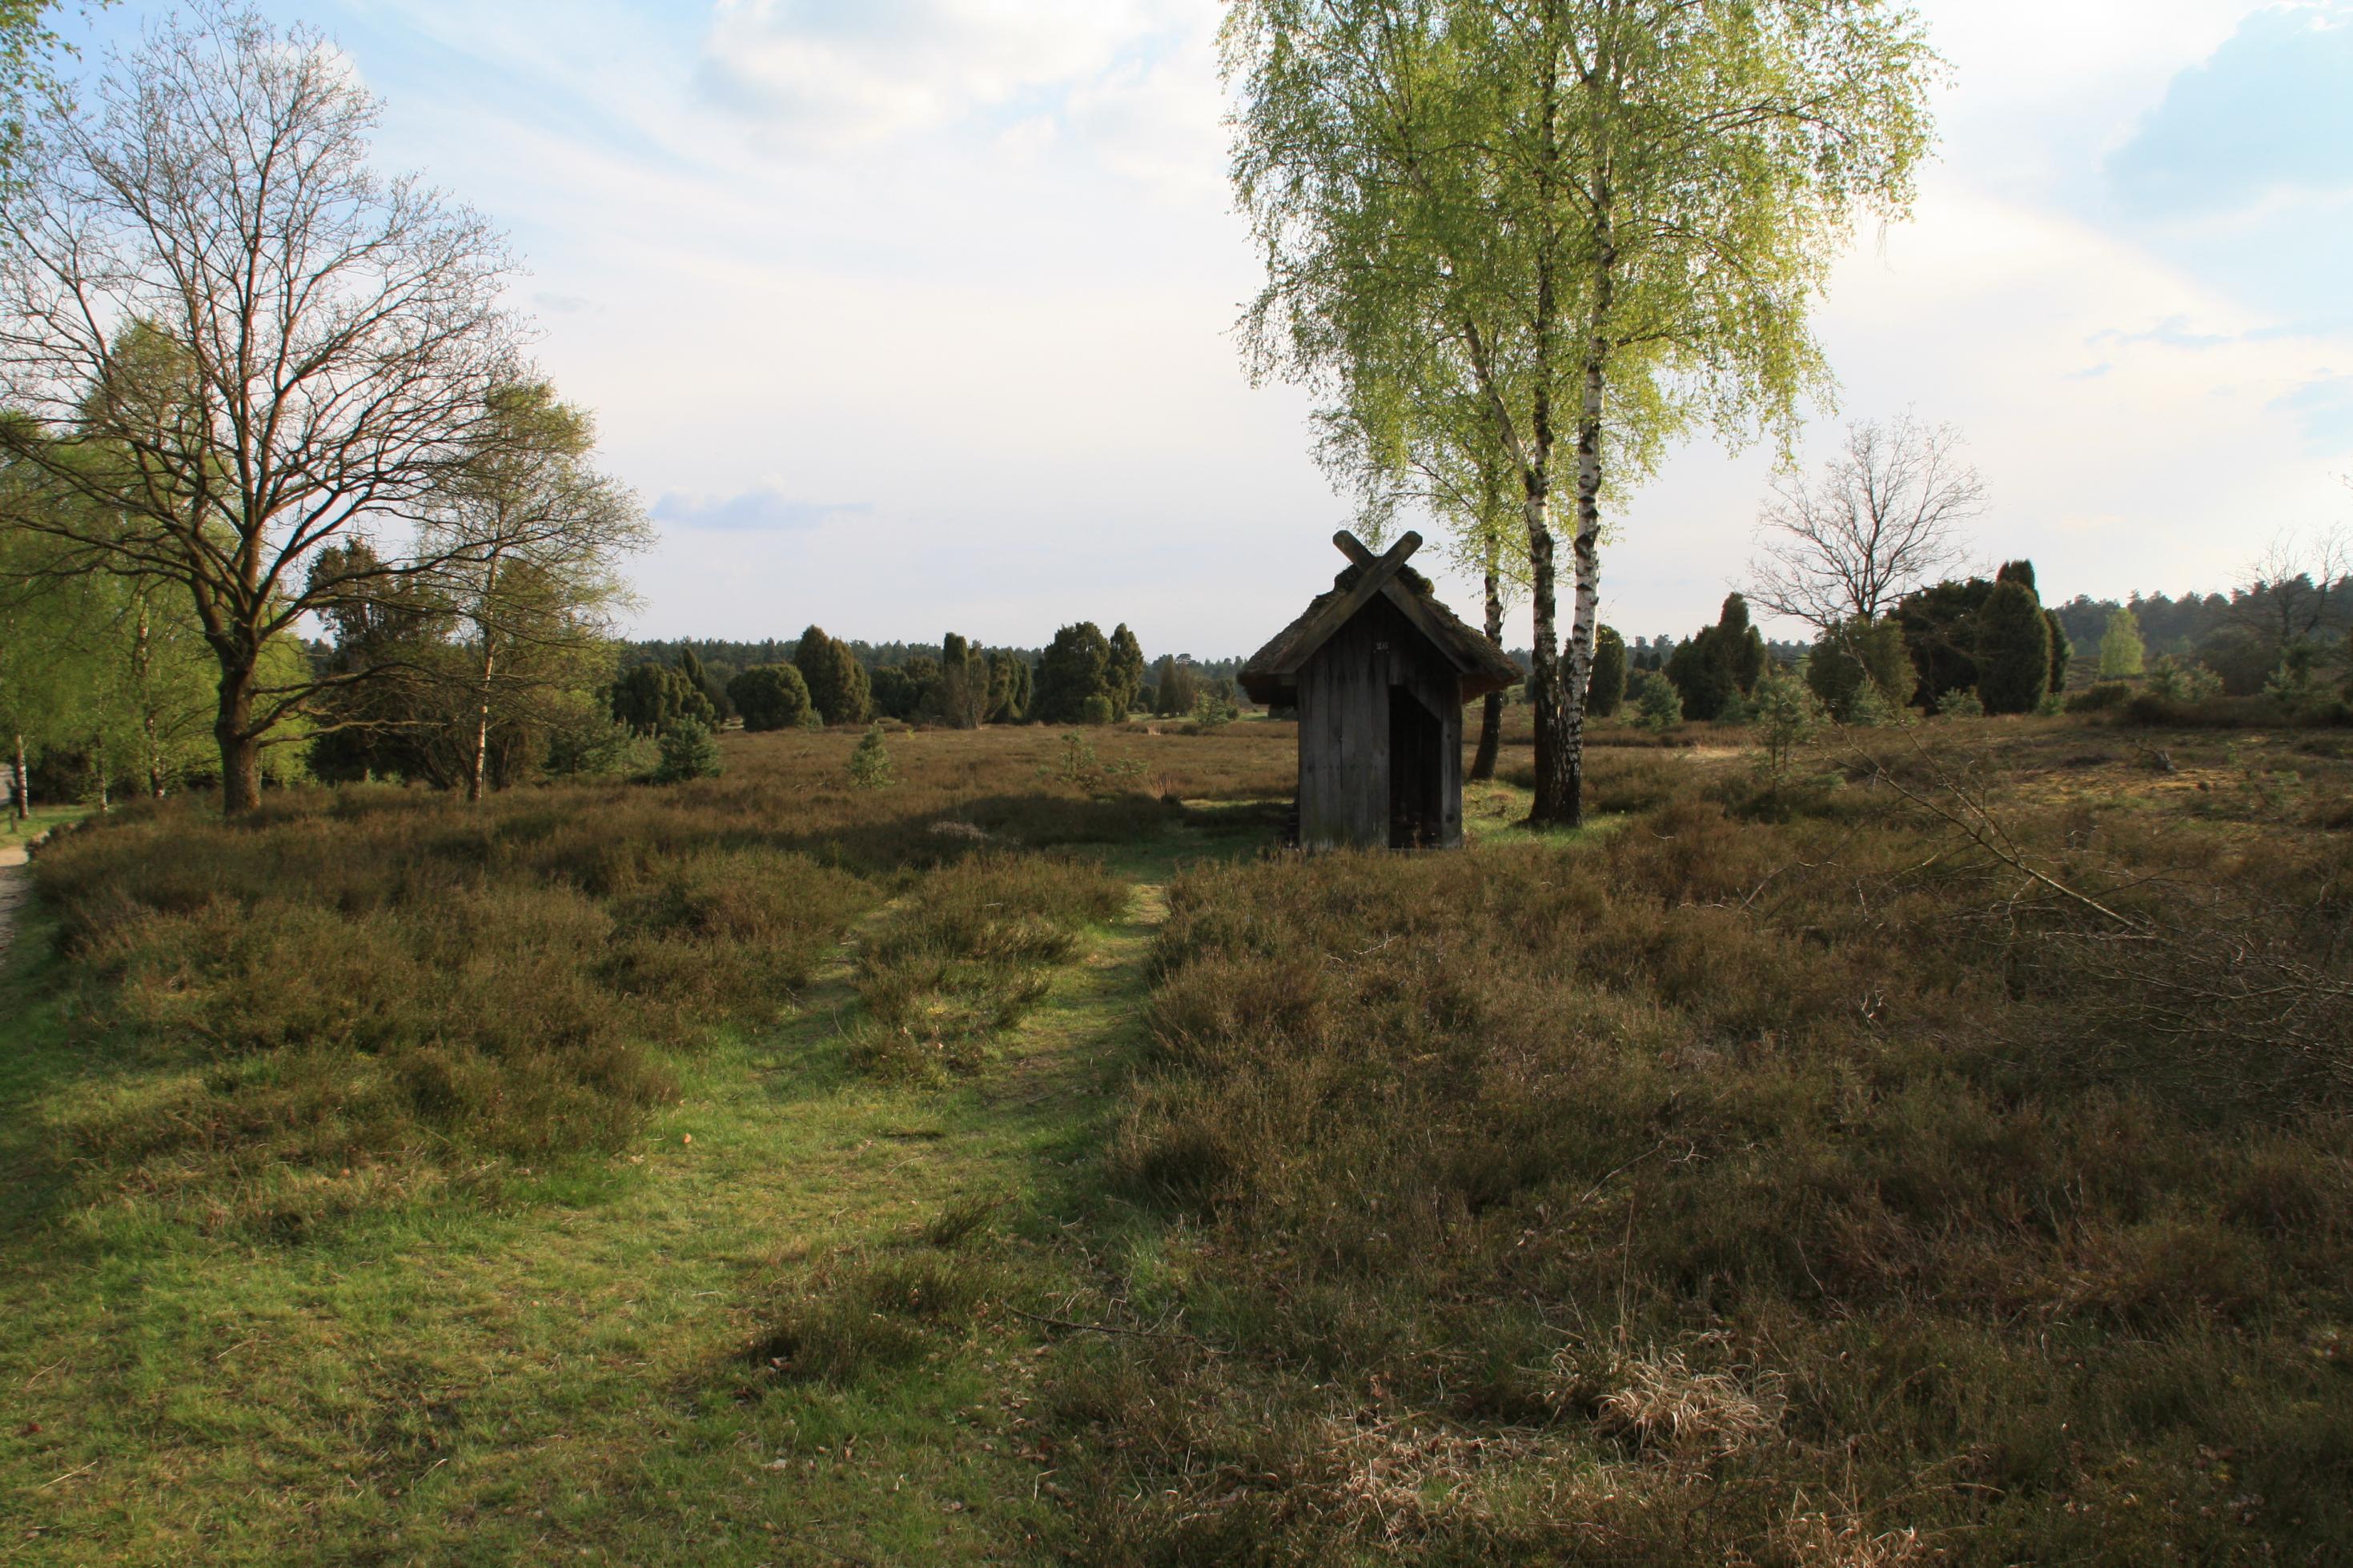 Eine Heidefläche im Naturschutzgebiet Nordheide. Zwischen den Heidekrautpolstern sprießen Wacholder und Birken, in der Mitte steht ein überdachter Bienenstock